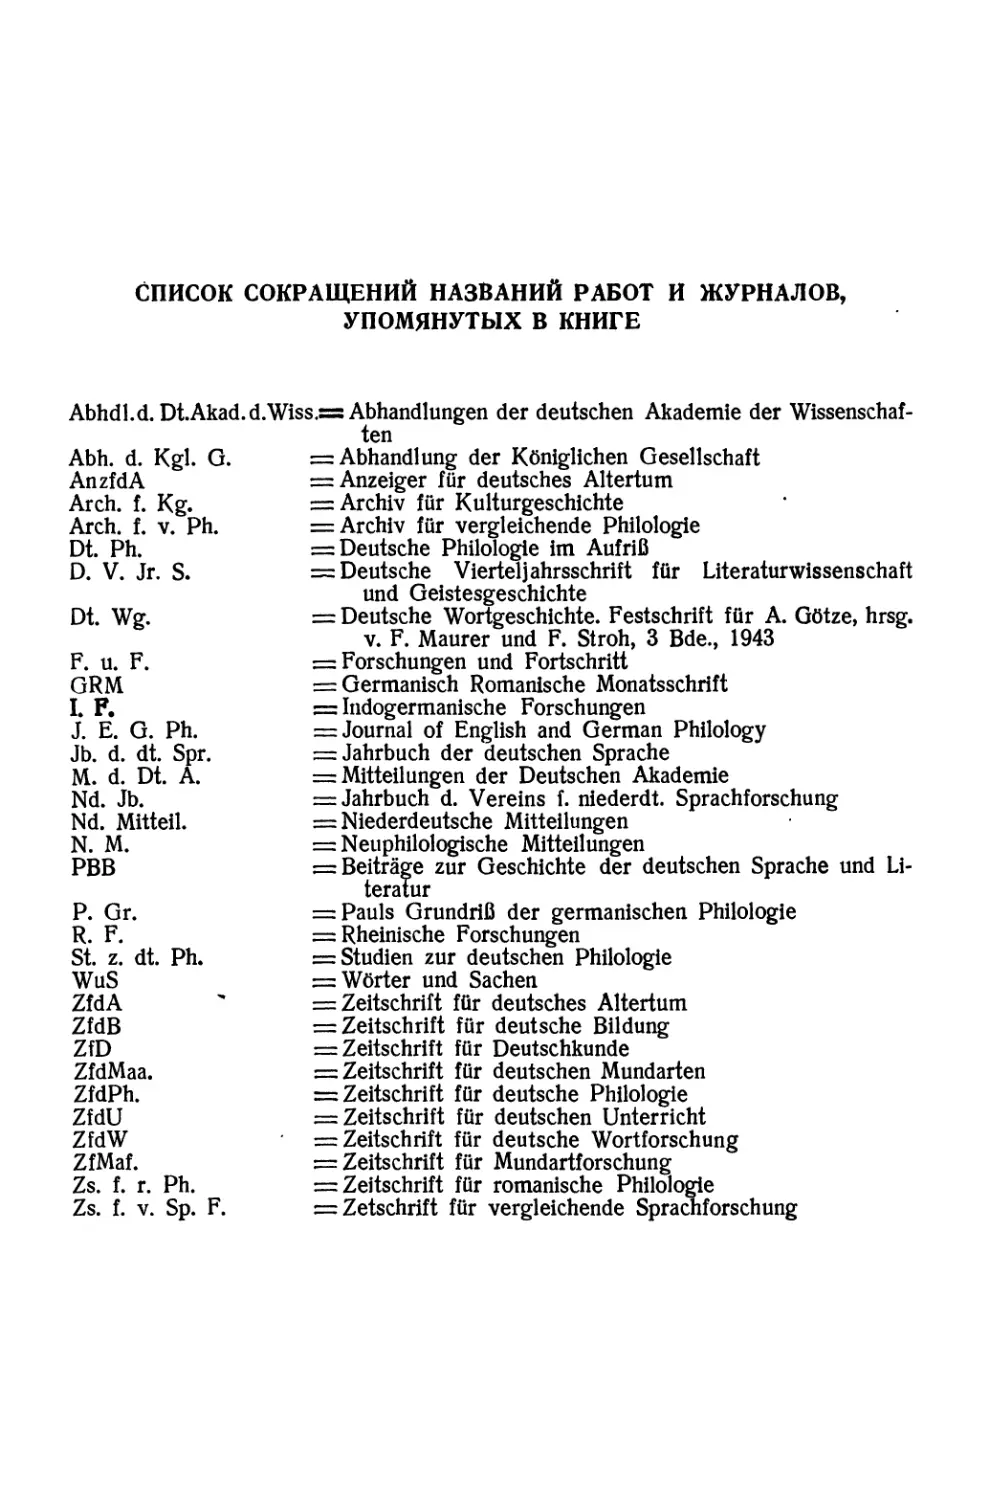 Список сокращений названий работ и журналов, упомянутых в книге